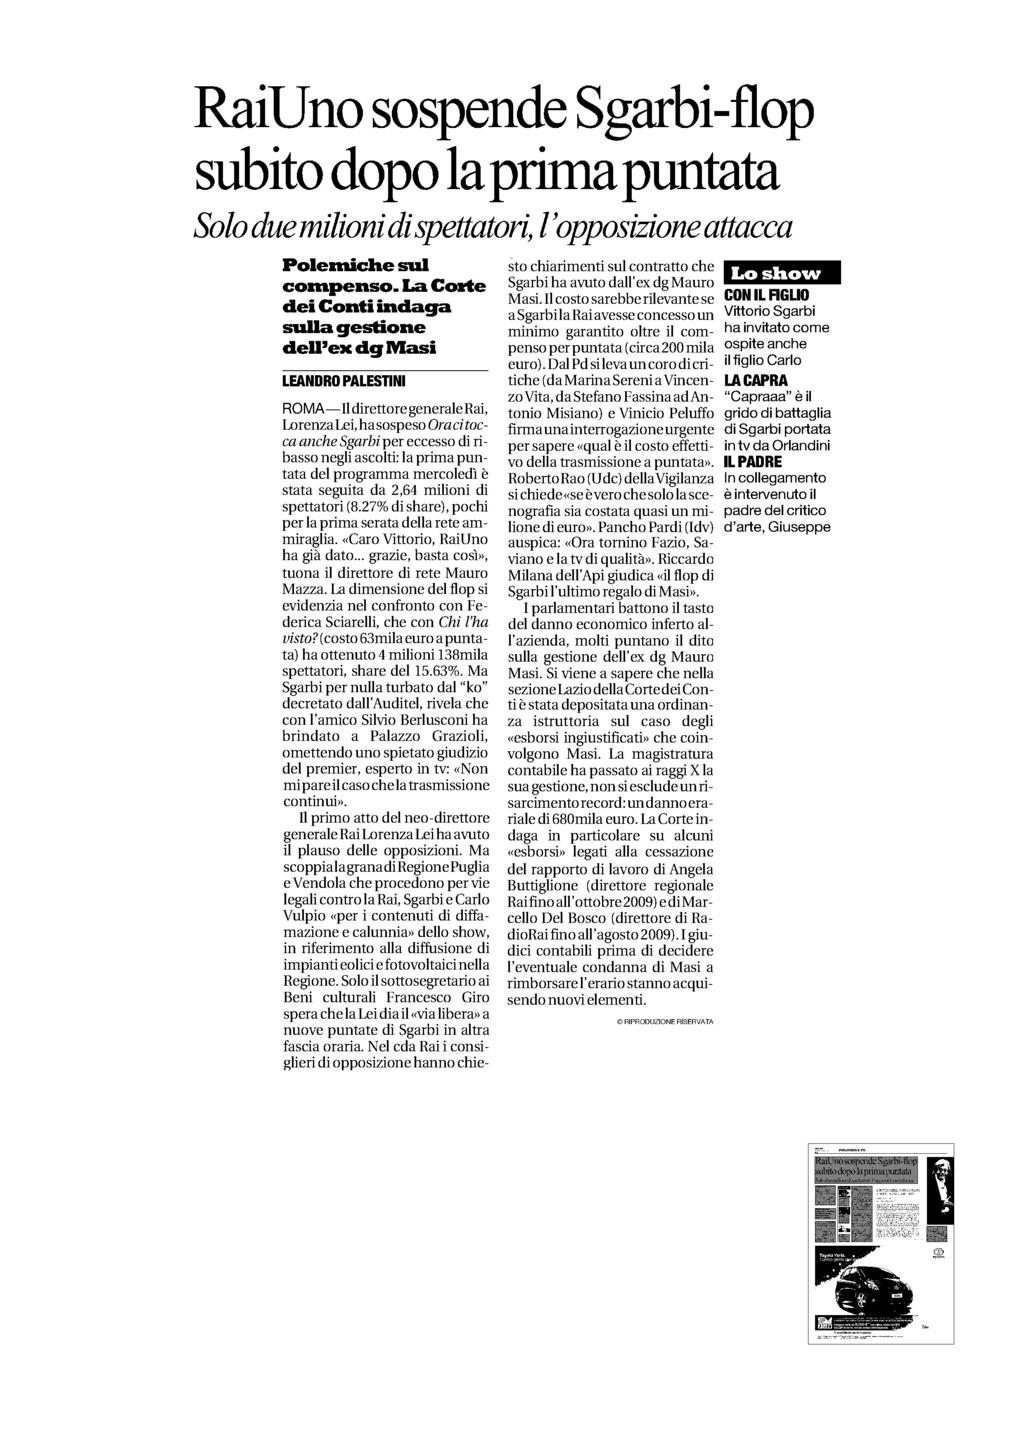 Quotidiano Roma Diffusione: 485.286 Lettori: 3.269.